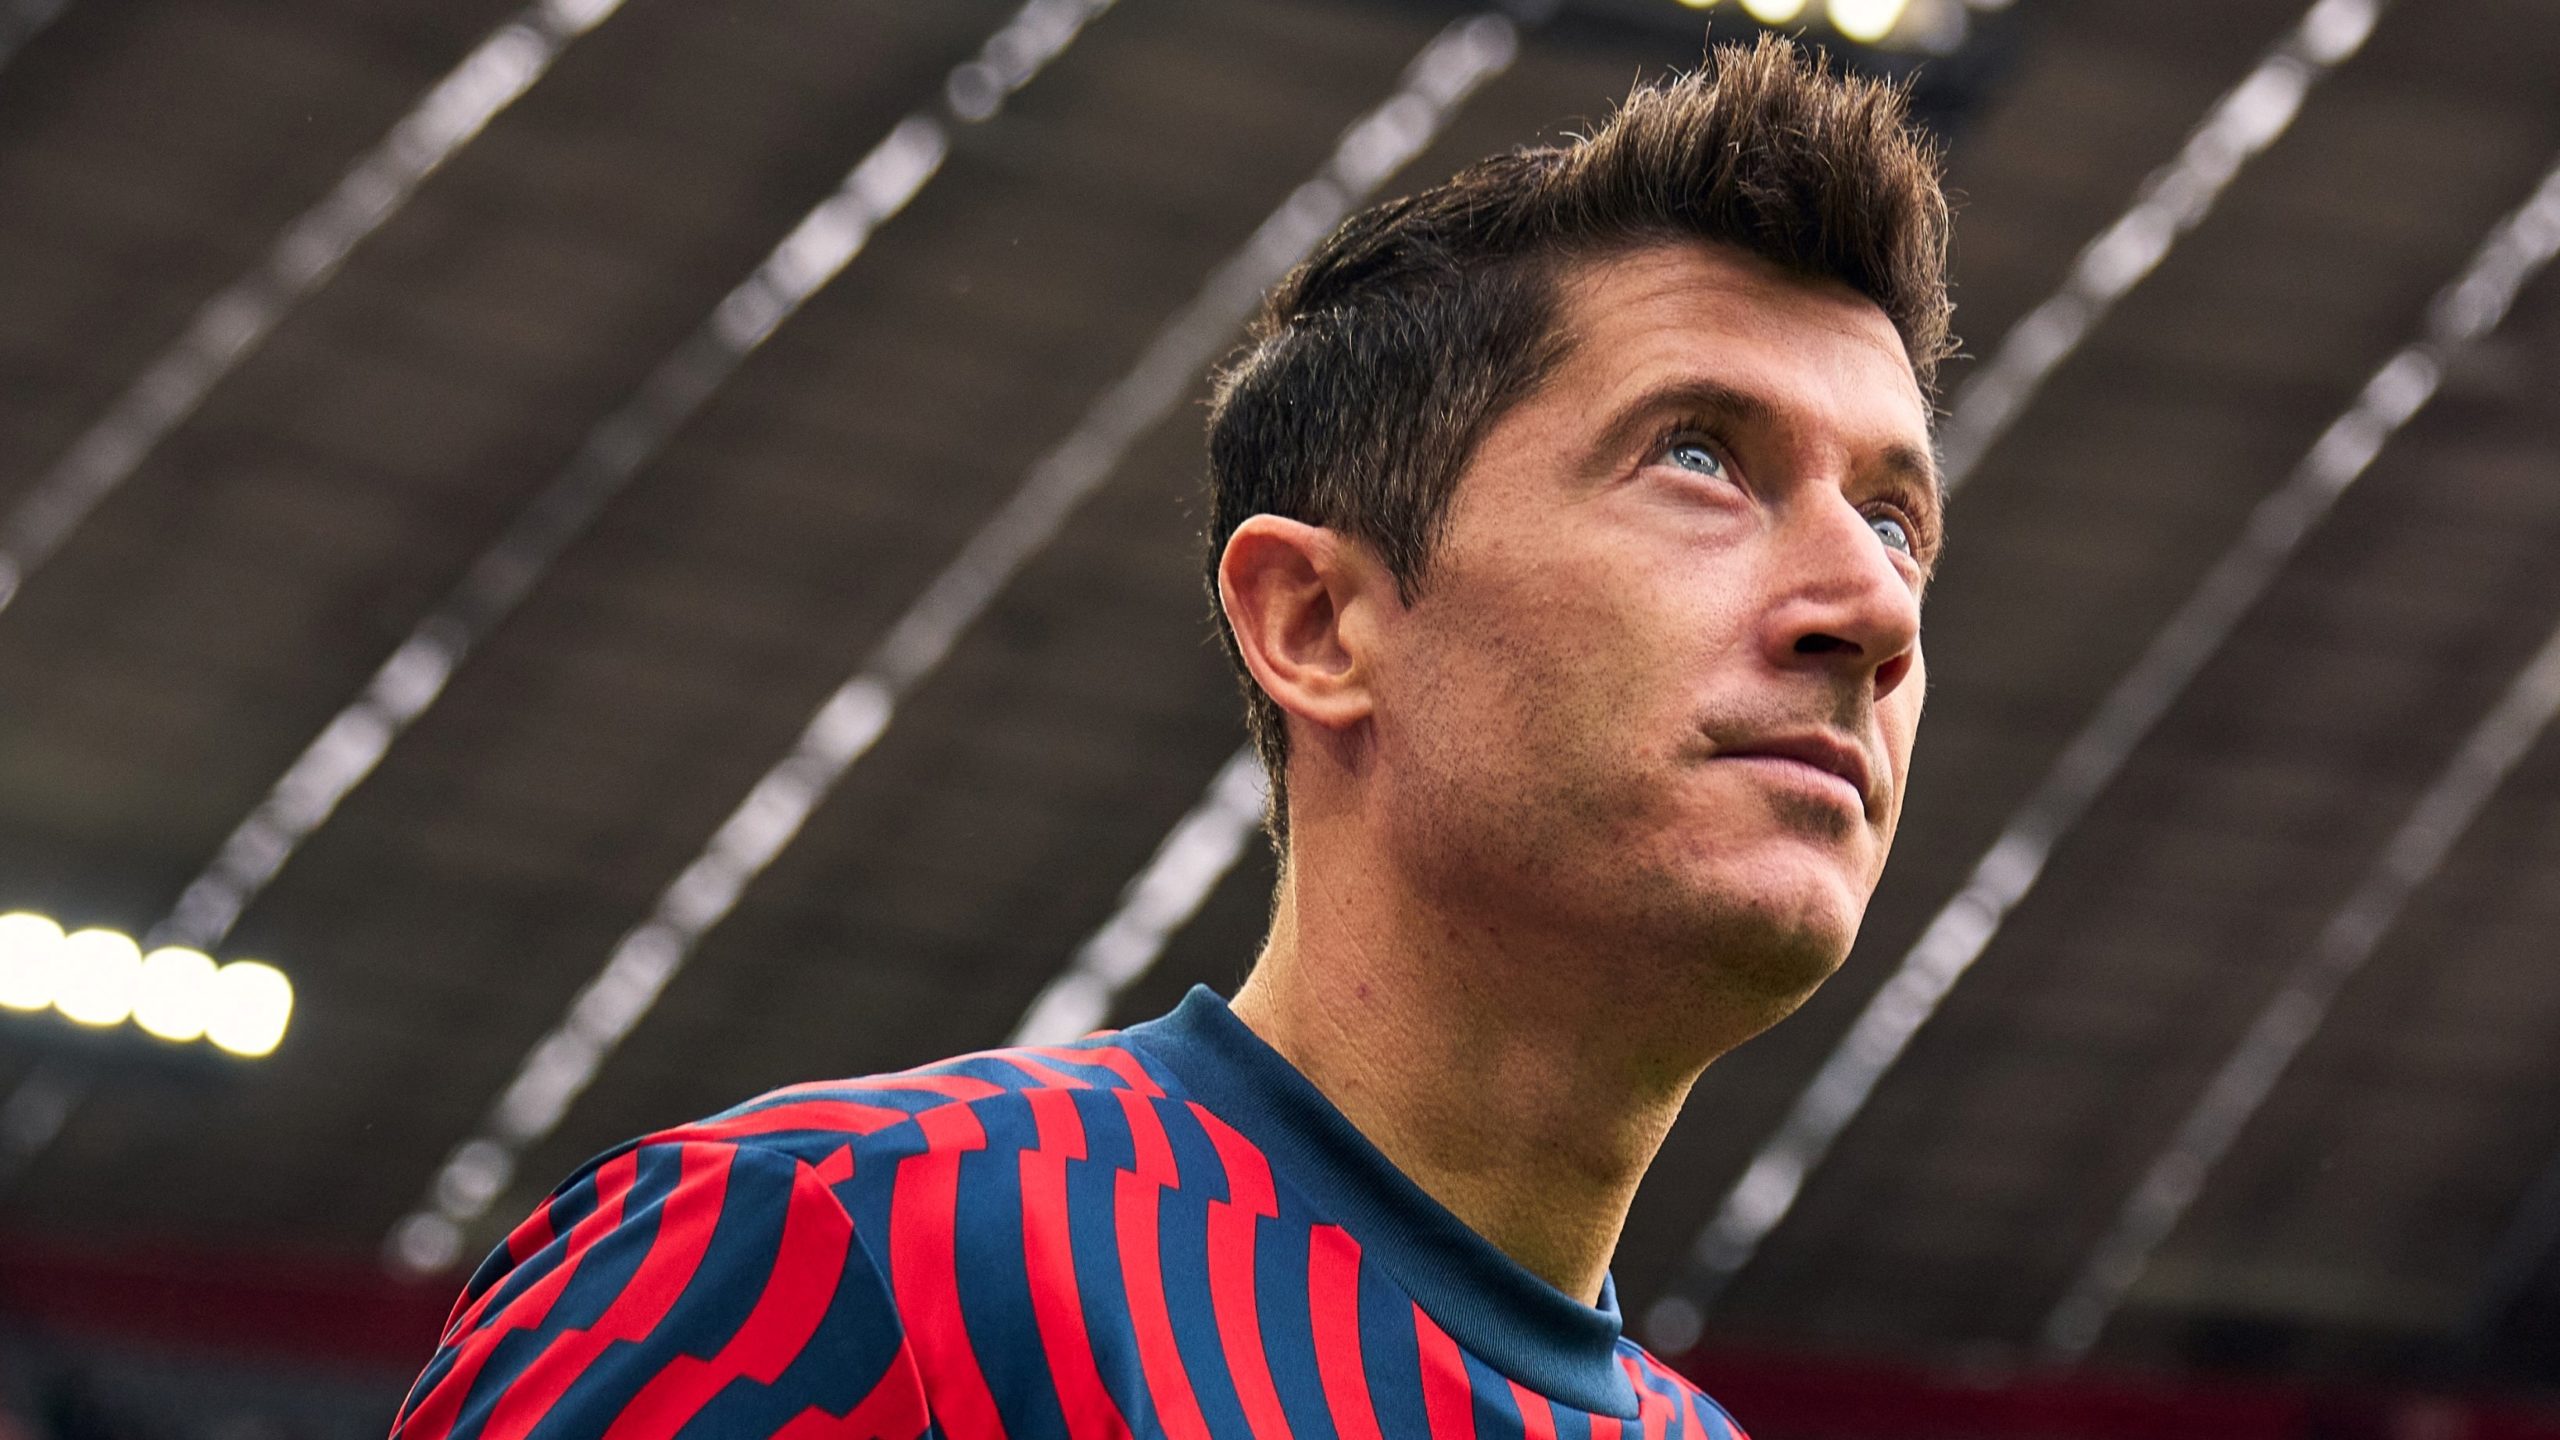 Robert Lewandowski olhando para cima enquanto entra em campo com uniforme de treino do Bayern de Munique.